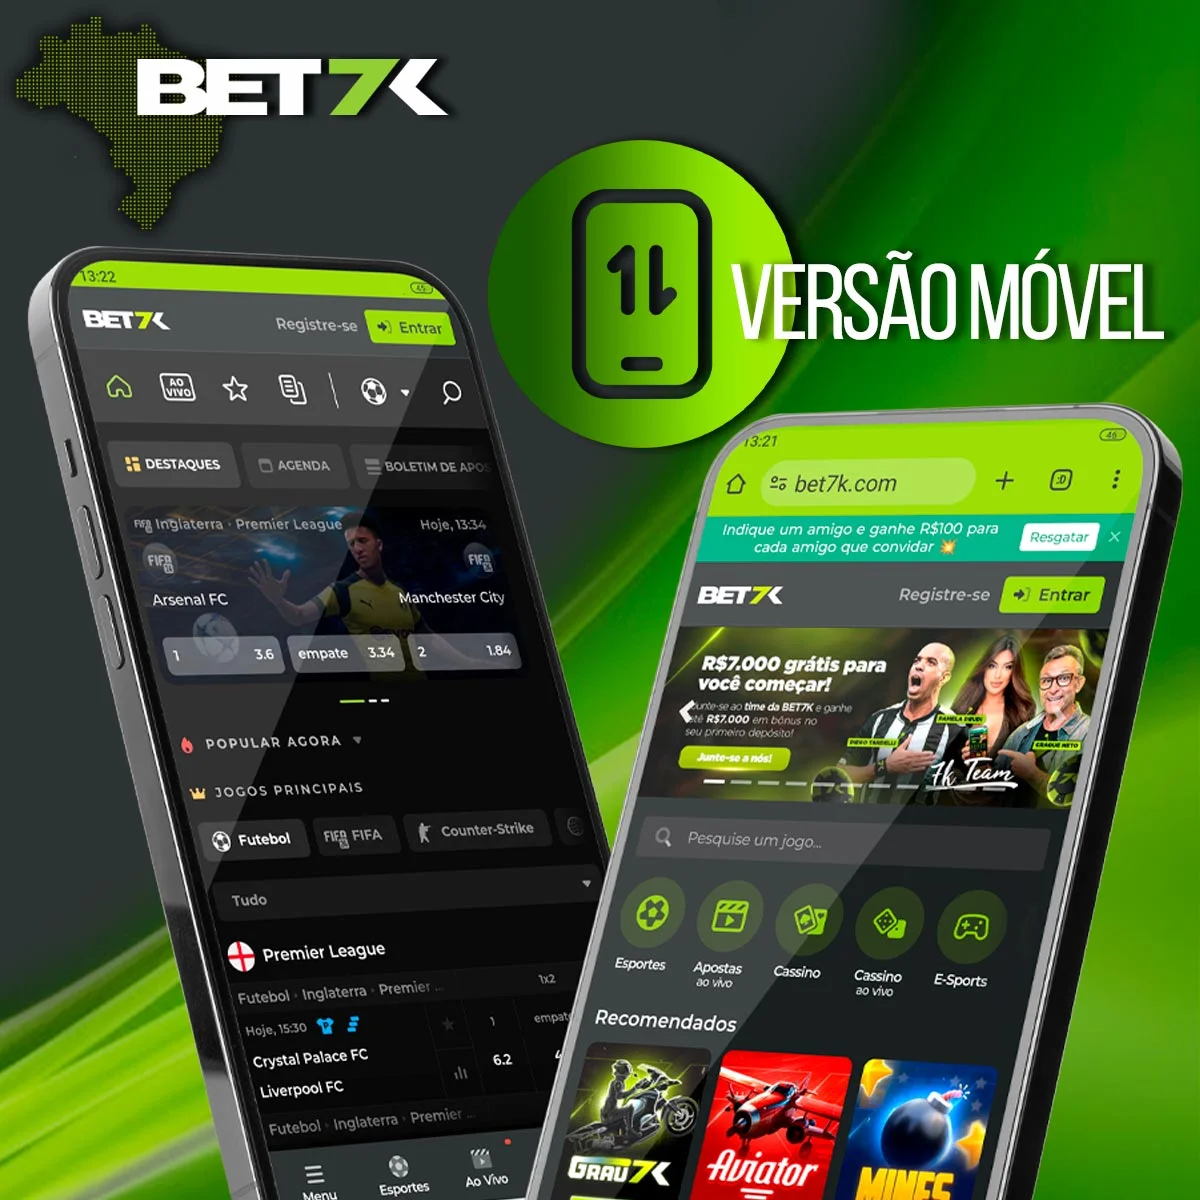 Versão móvel para usuários da casa de apostas Bet7k no Brasil